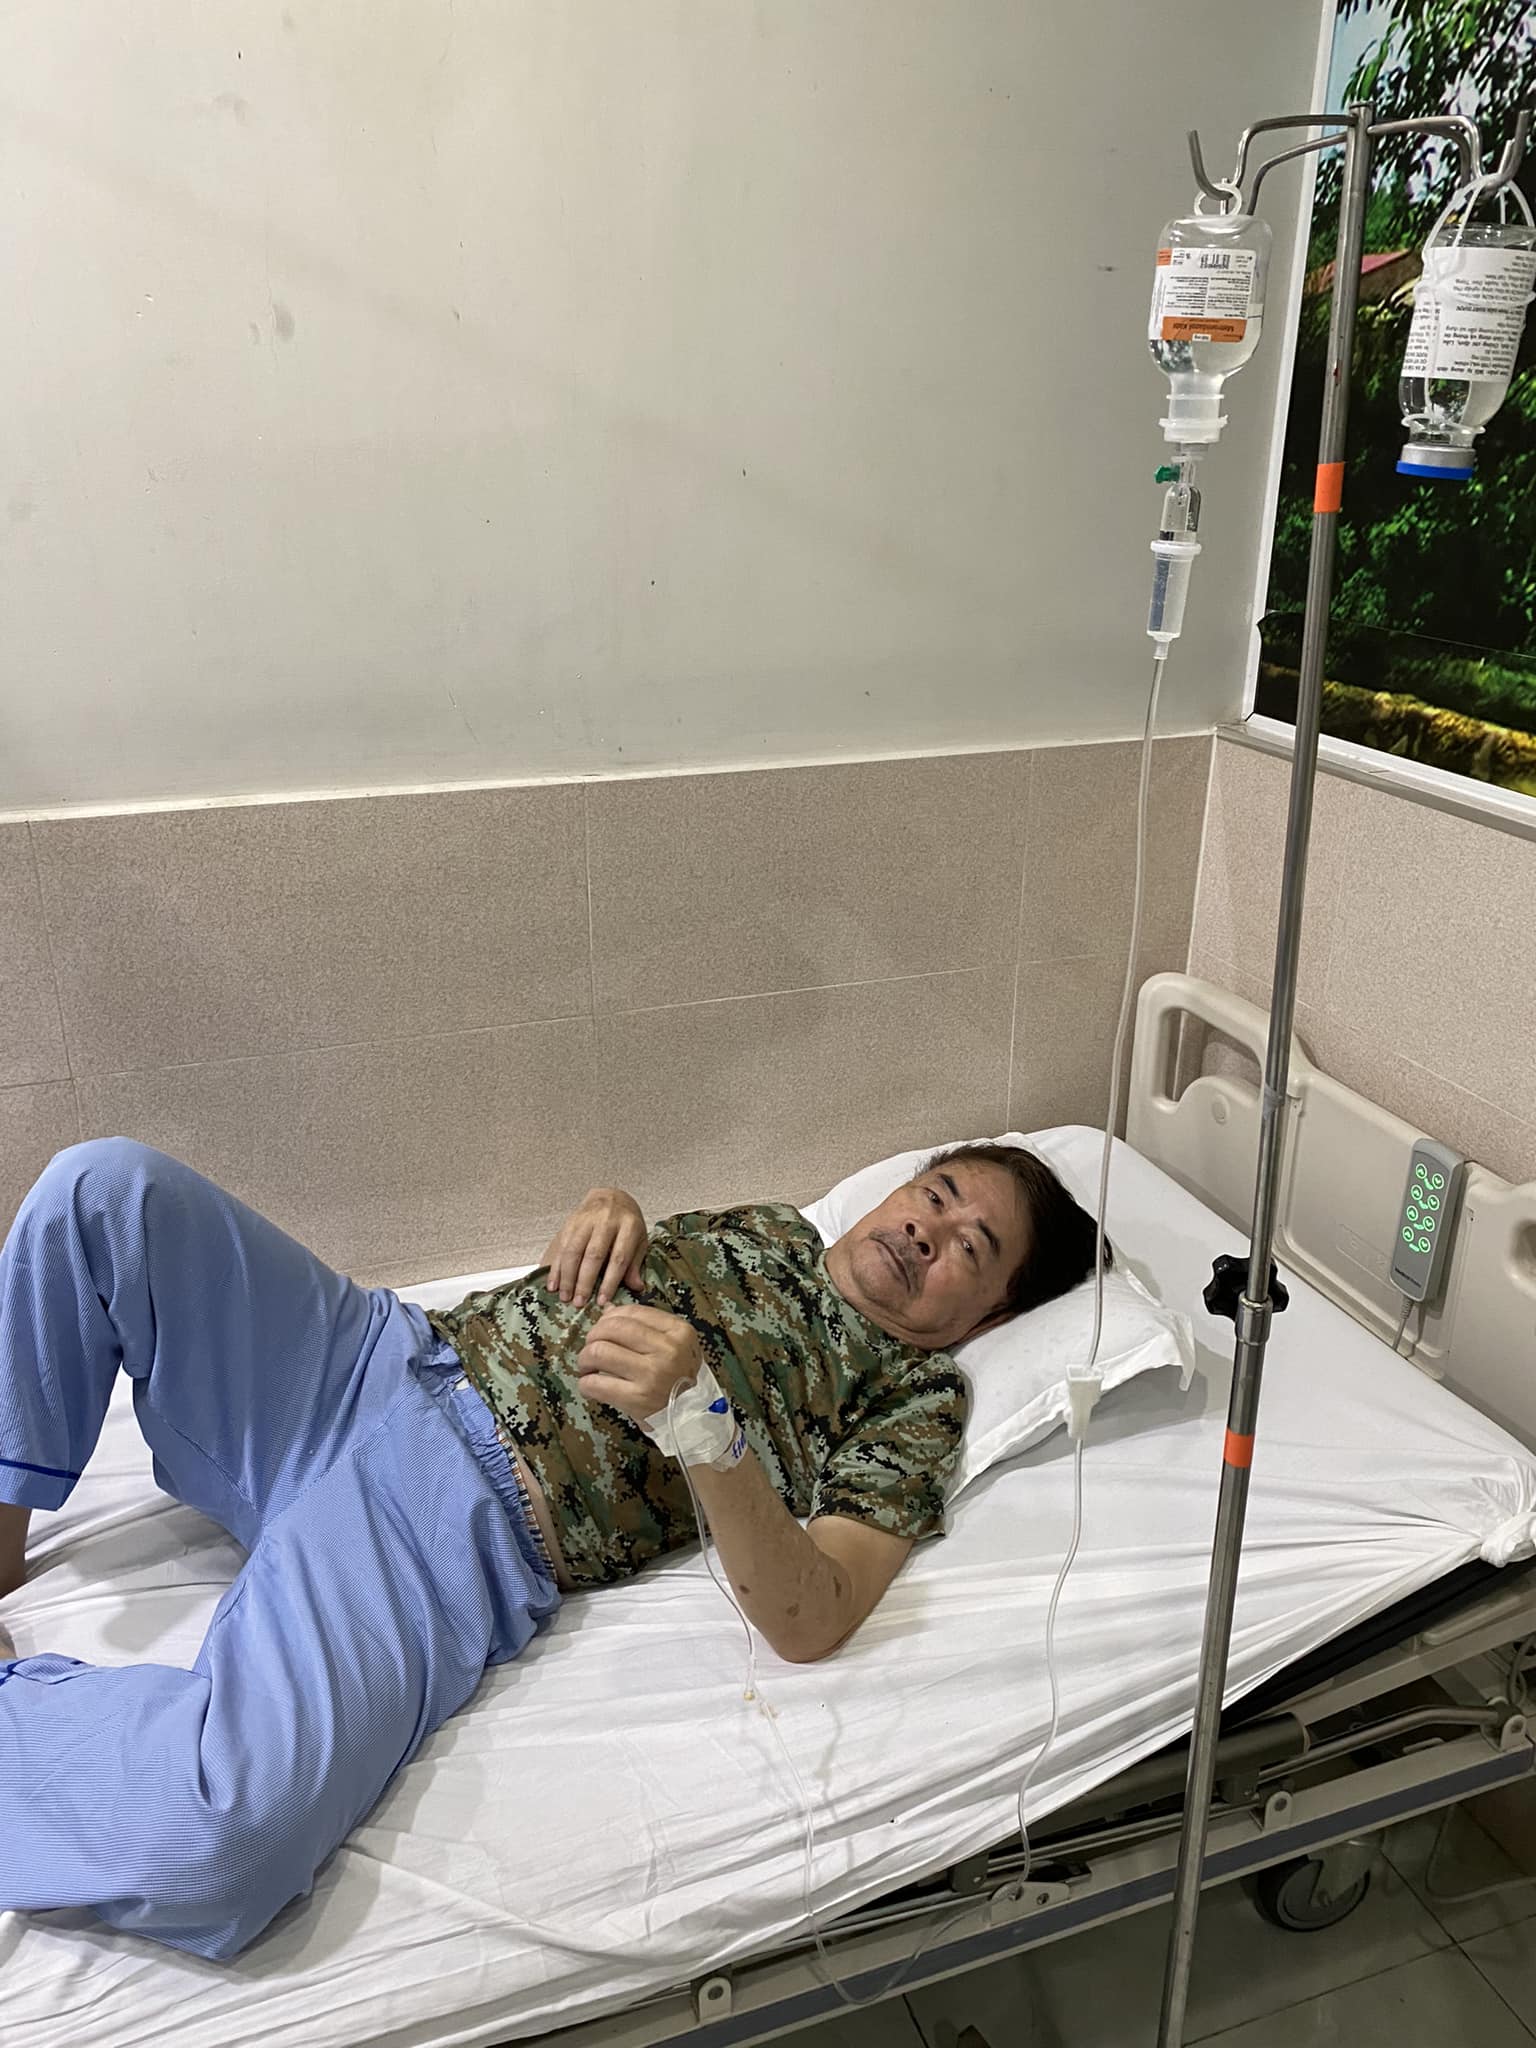 Nam diễn viên 'Biệt động Sài Gòn' nguy kịch nhập viện, em trai nước ngoài tức tốc về thăm, sức khỏe hiện ra sao? - ảnh 2